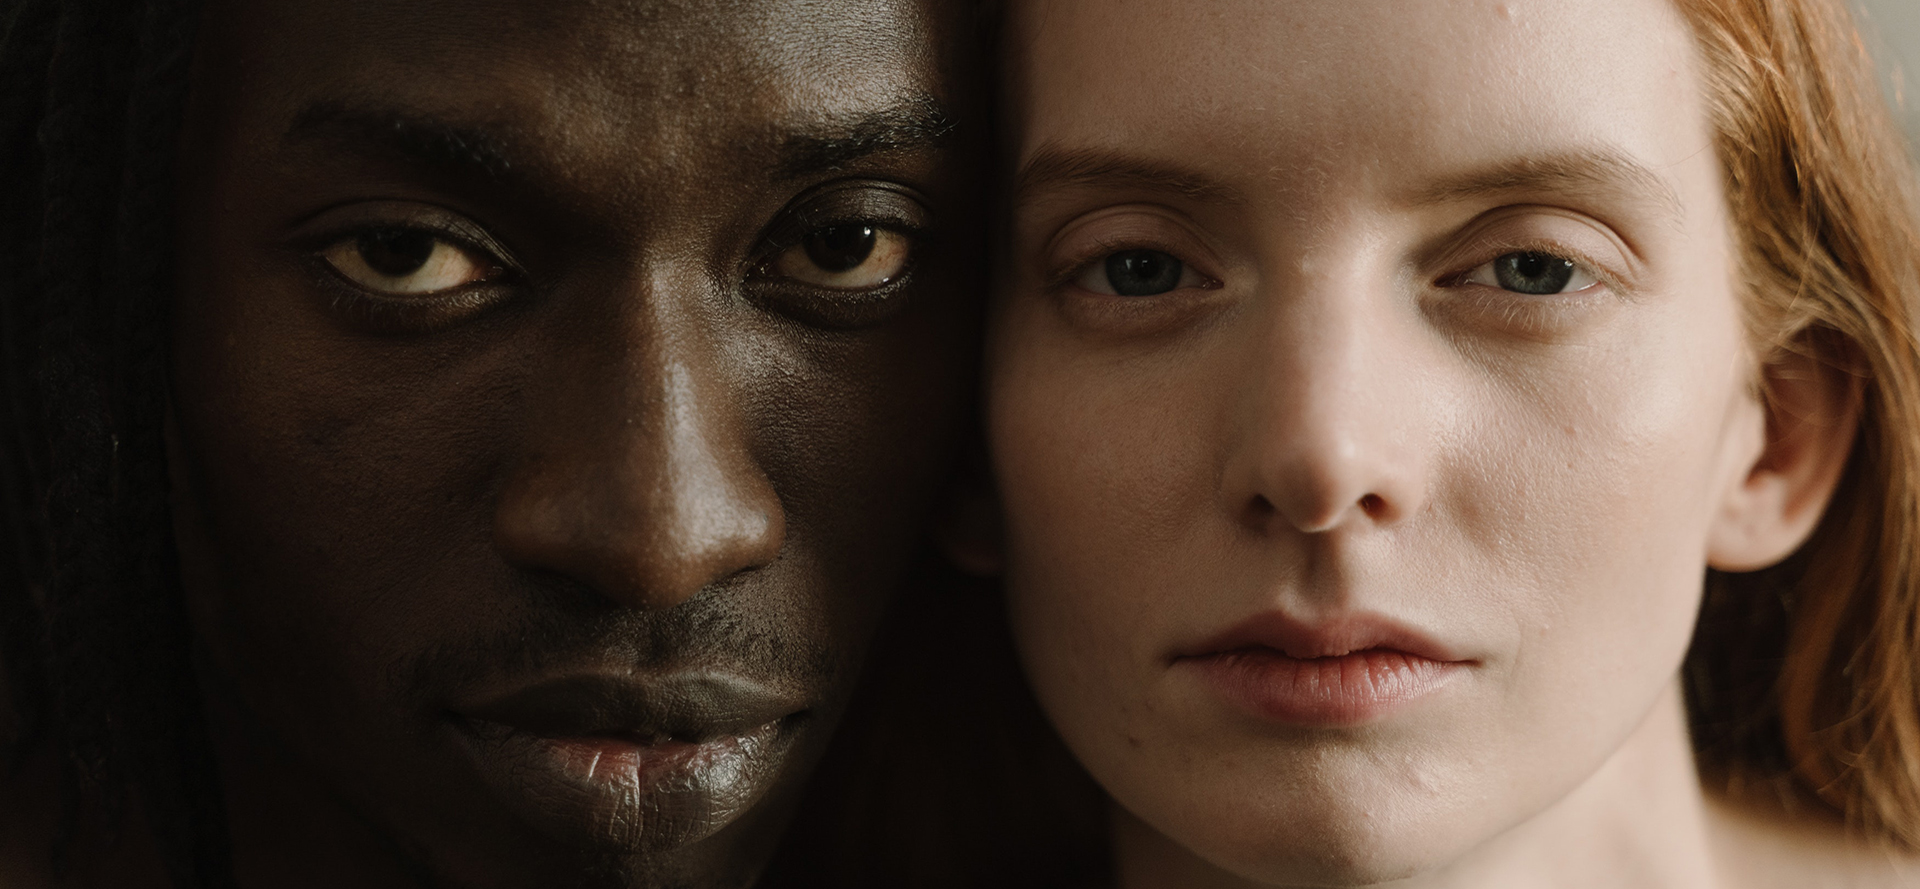 Un ritratto faccia a faccia di un uomo nero e di una donna bianca.